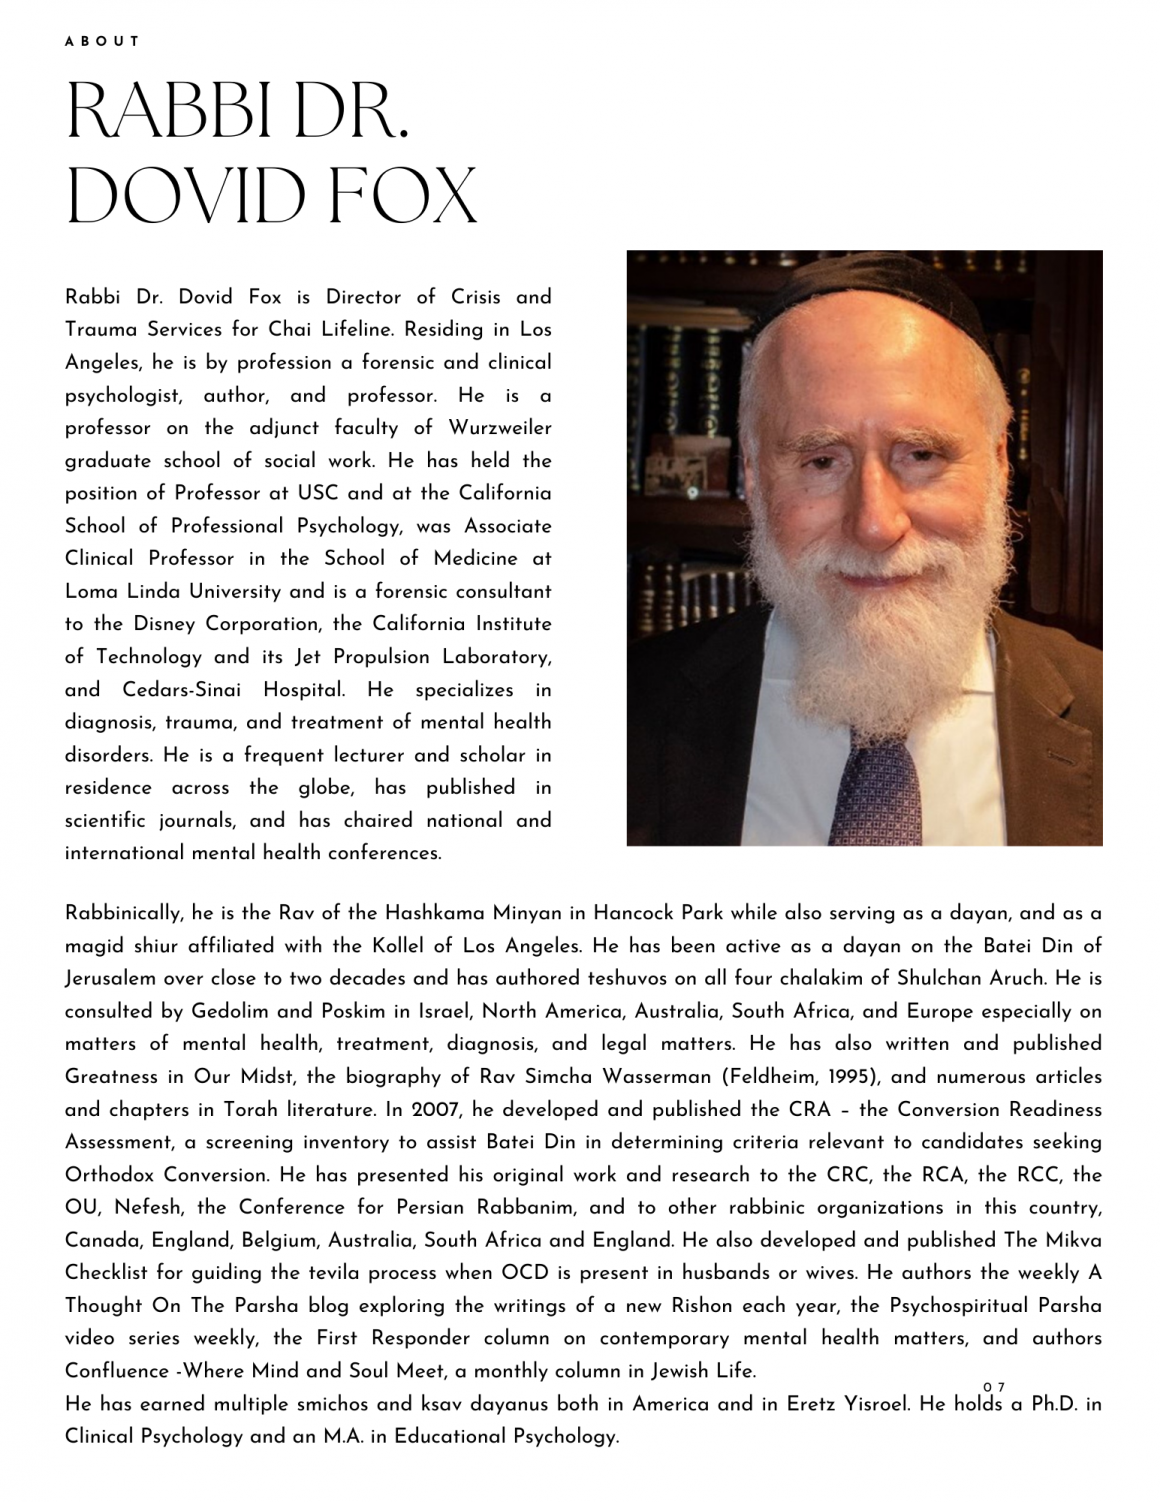 RAbbi Dr Dovid Fox Bio